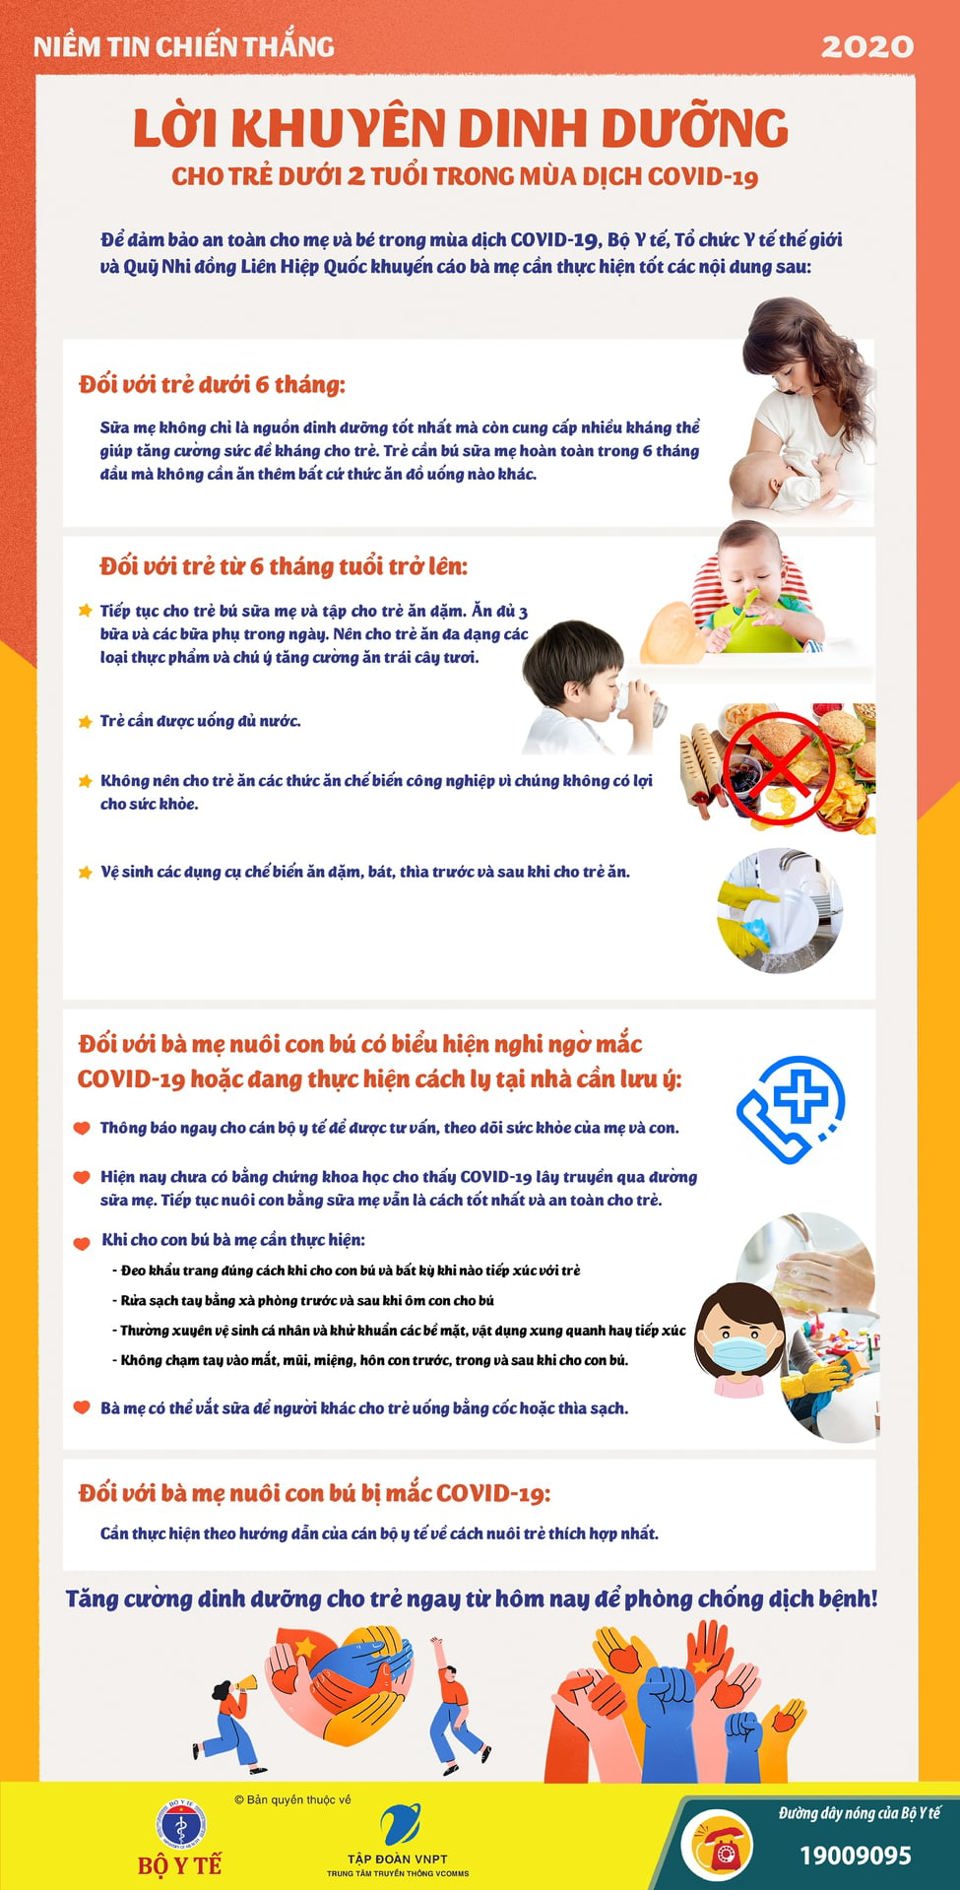 Lời khuyên dinh dưỡng cho trẻ dưới 2 tuổi trong mùa dịch Covid-19 - Ảnh 1